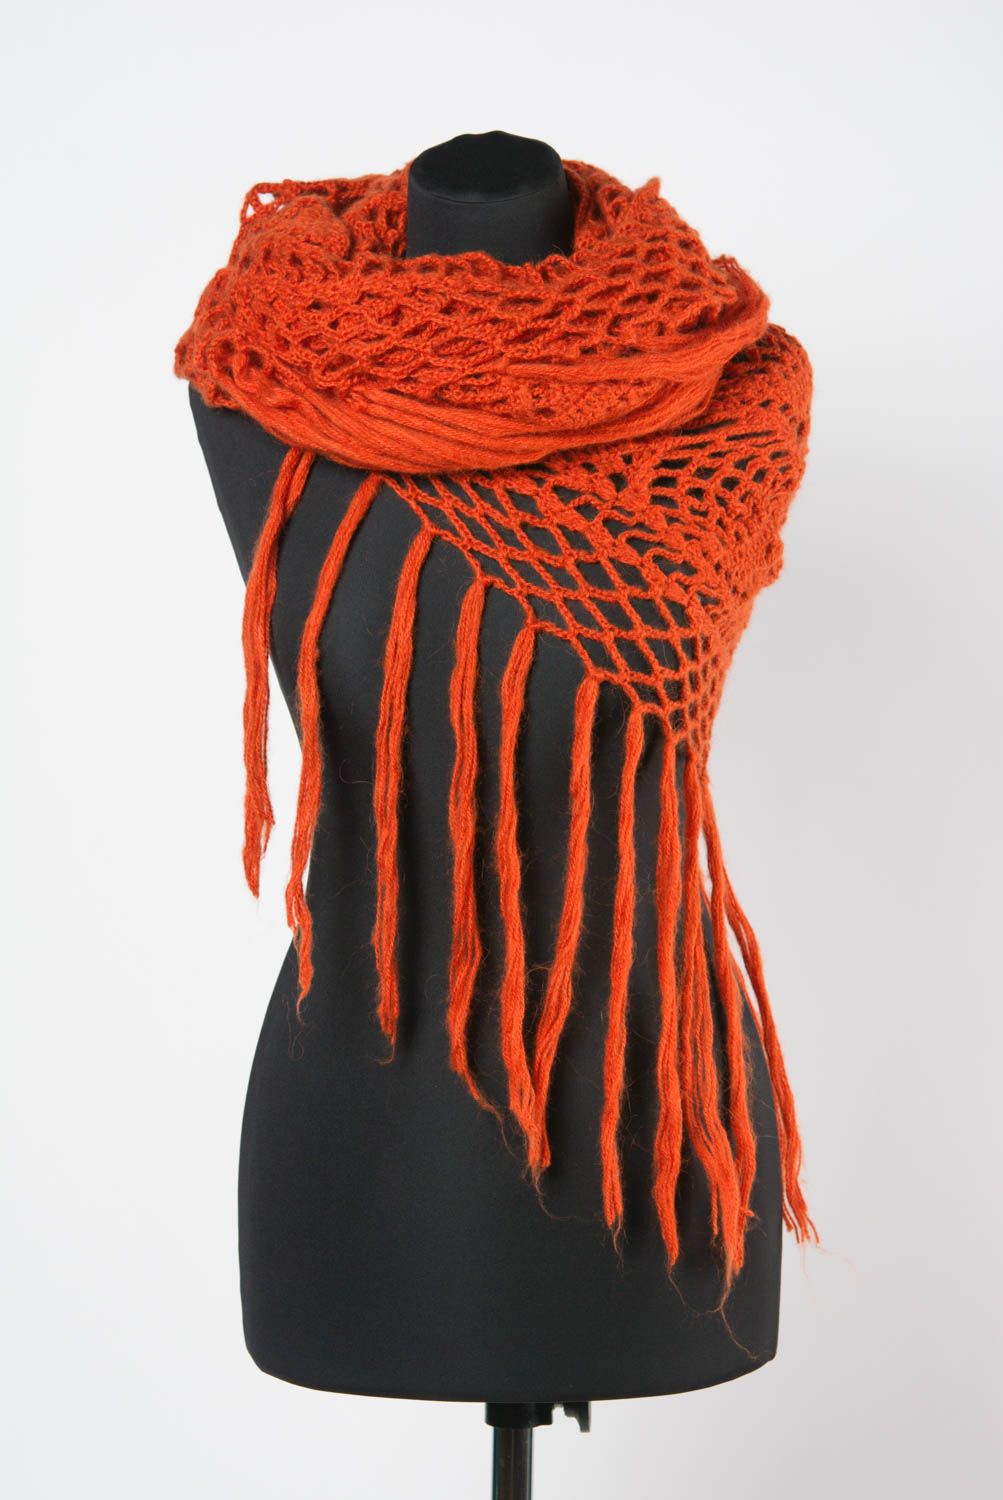 Châle tricoté avec des aiguilles fait main en laine chaud orange pour femme photo 1